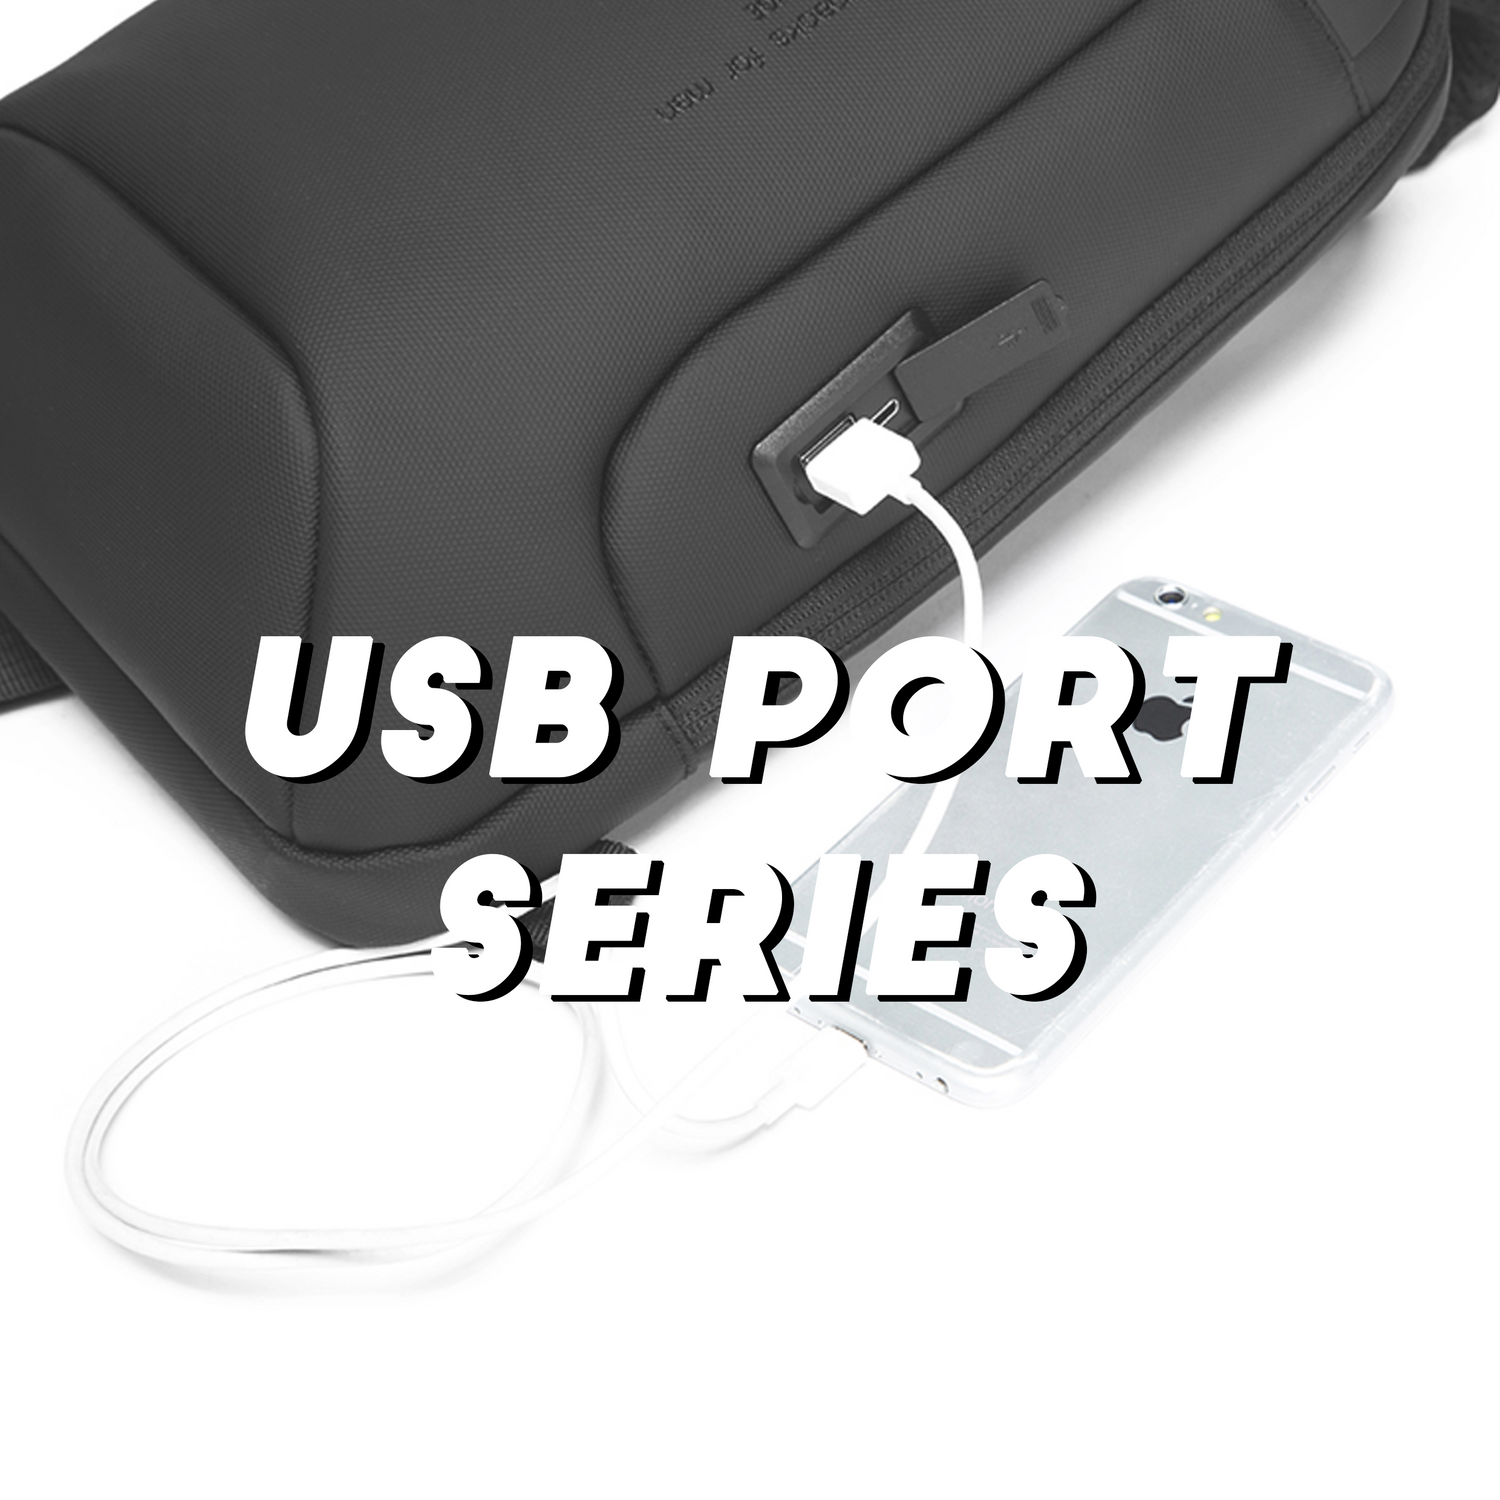 USB Port Series